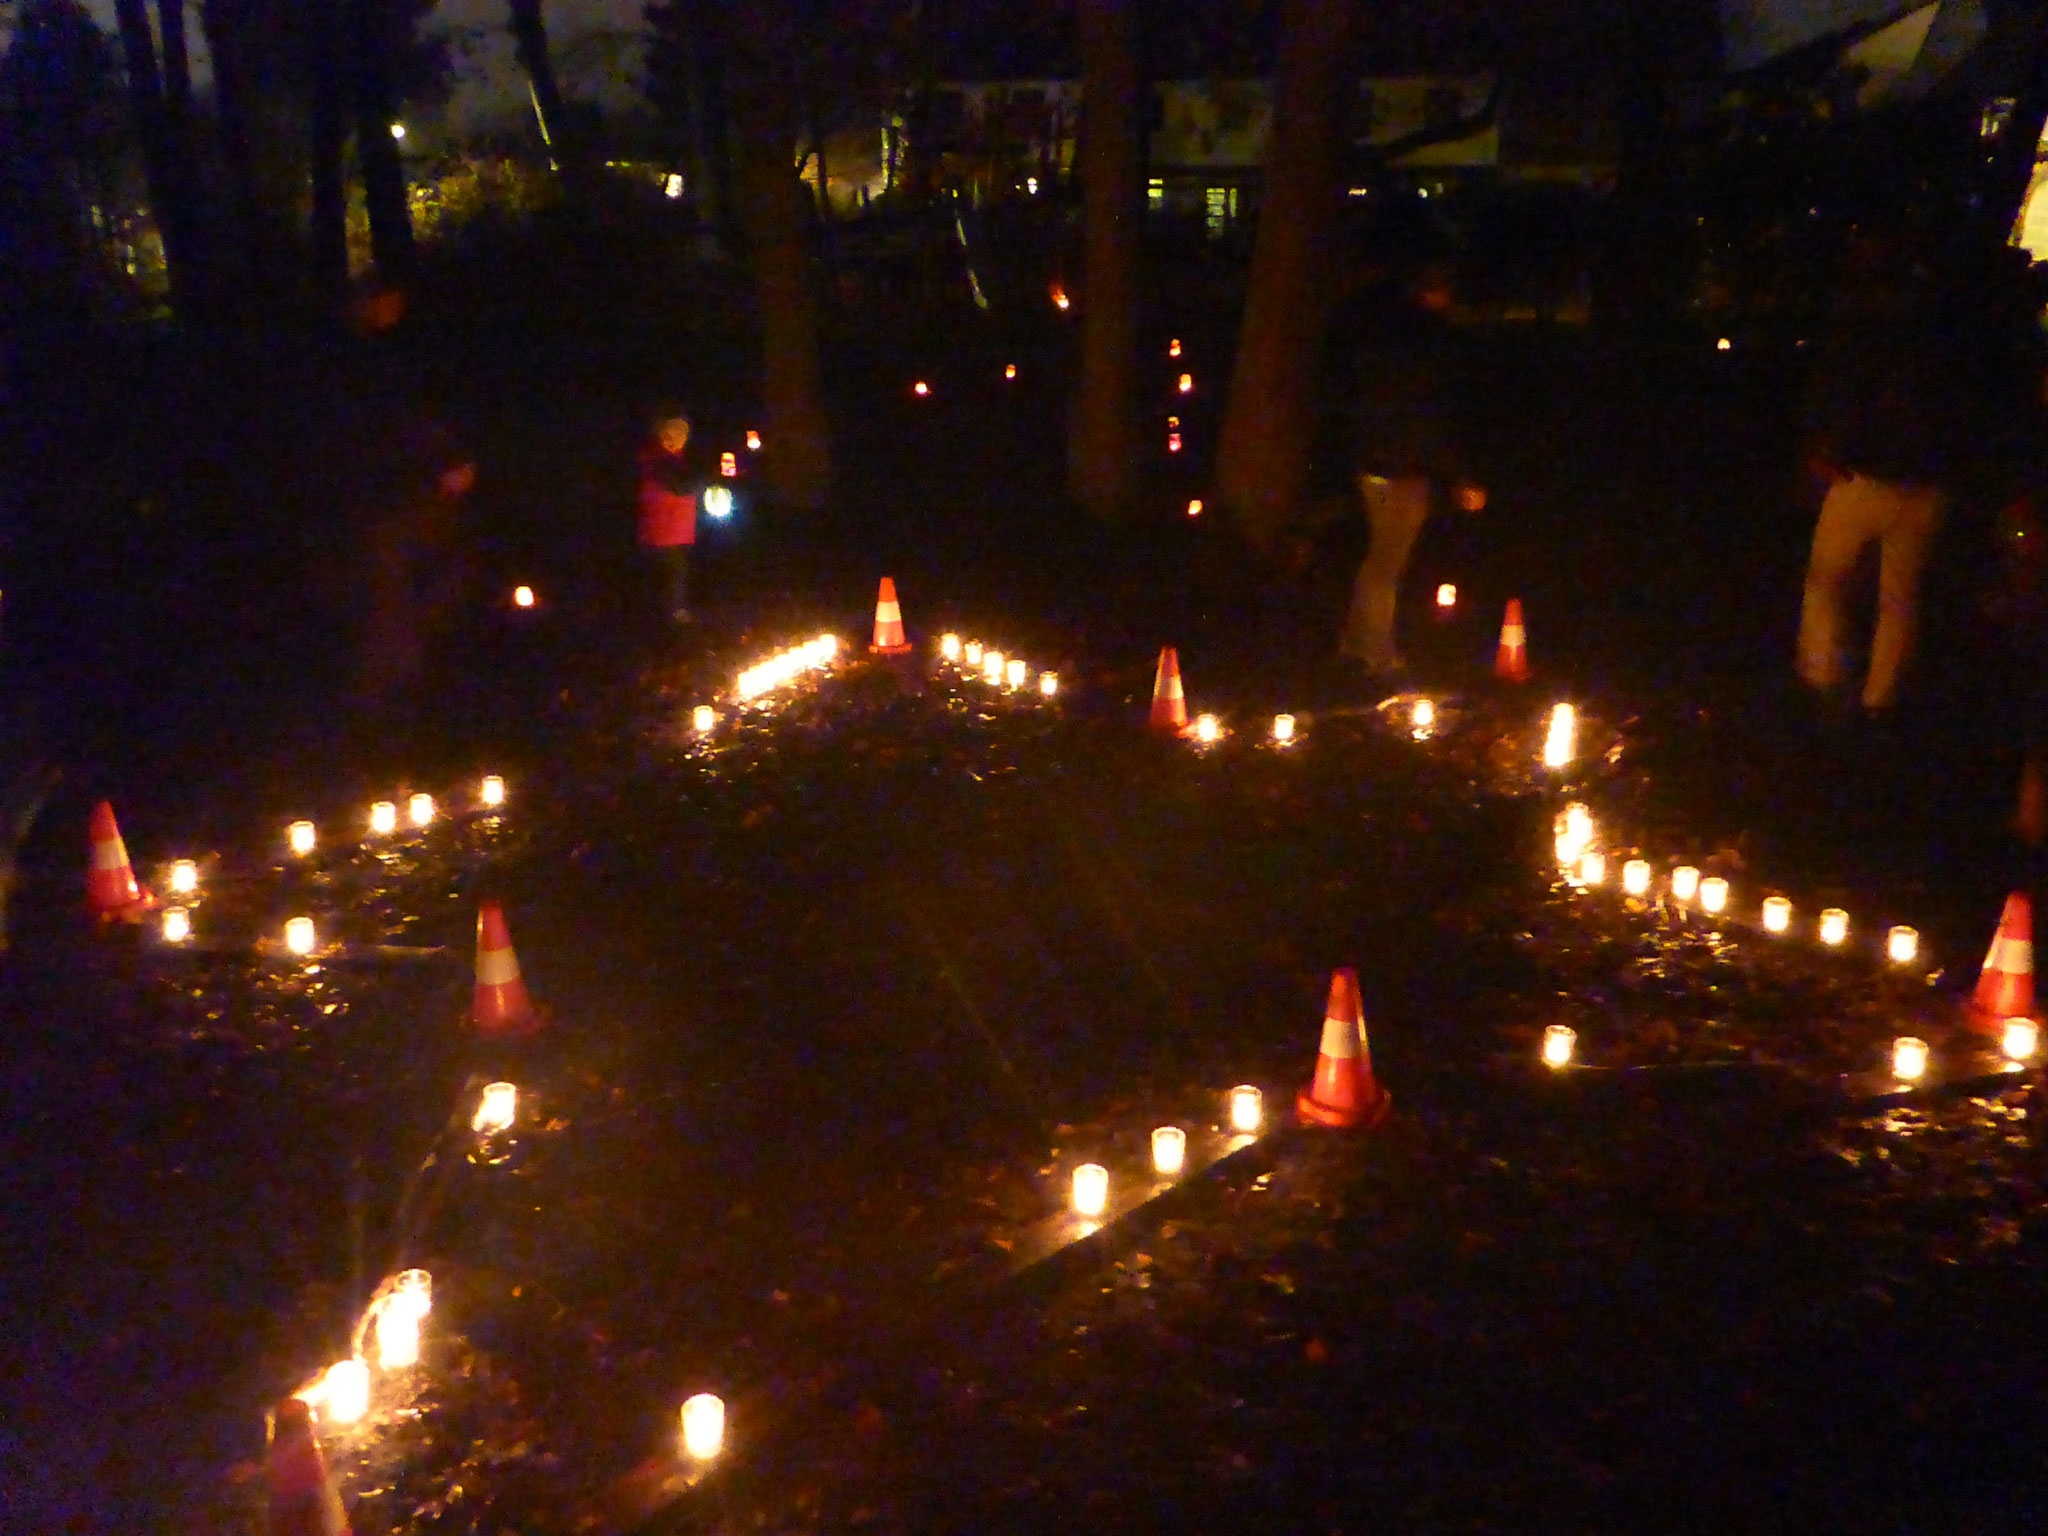 Die AWO-Kita Traute Gothe begann ihr diesjähriges Lichterfest mit einem Laternenumzug... © K. Junge/AWO-Kita Traute Gothe